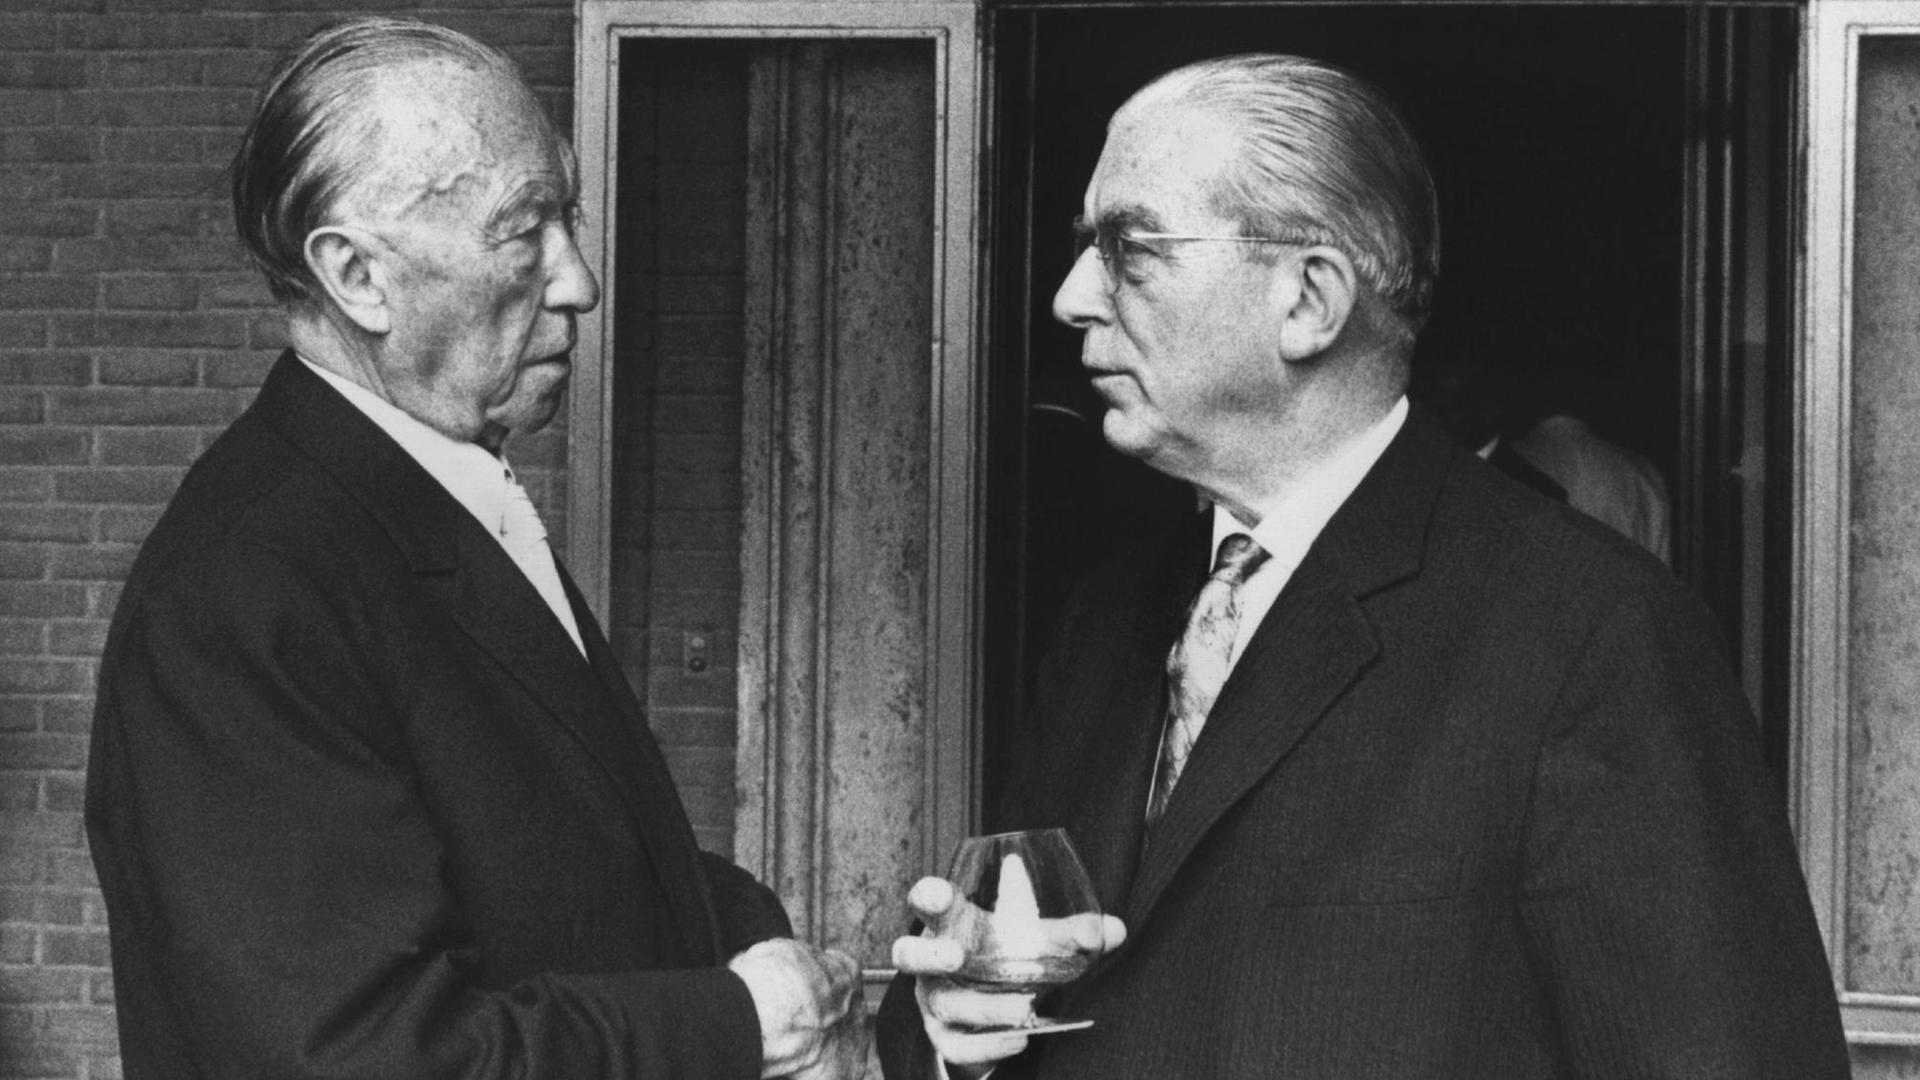 Bundeskanzler Konrad Adenauer und Staatssekretär Hans Globke im Gespräch, aufgenommen im September 1963 in der italienischen Hauptstadt Rom.